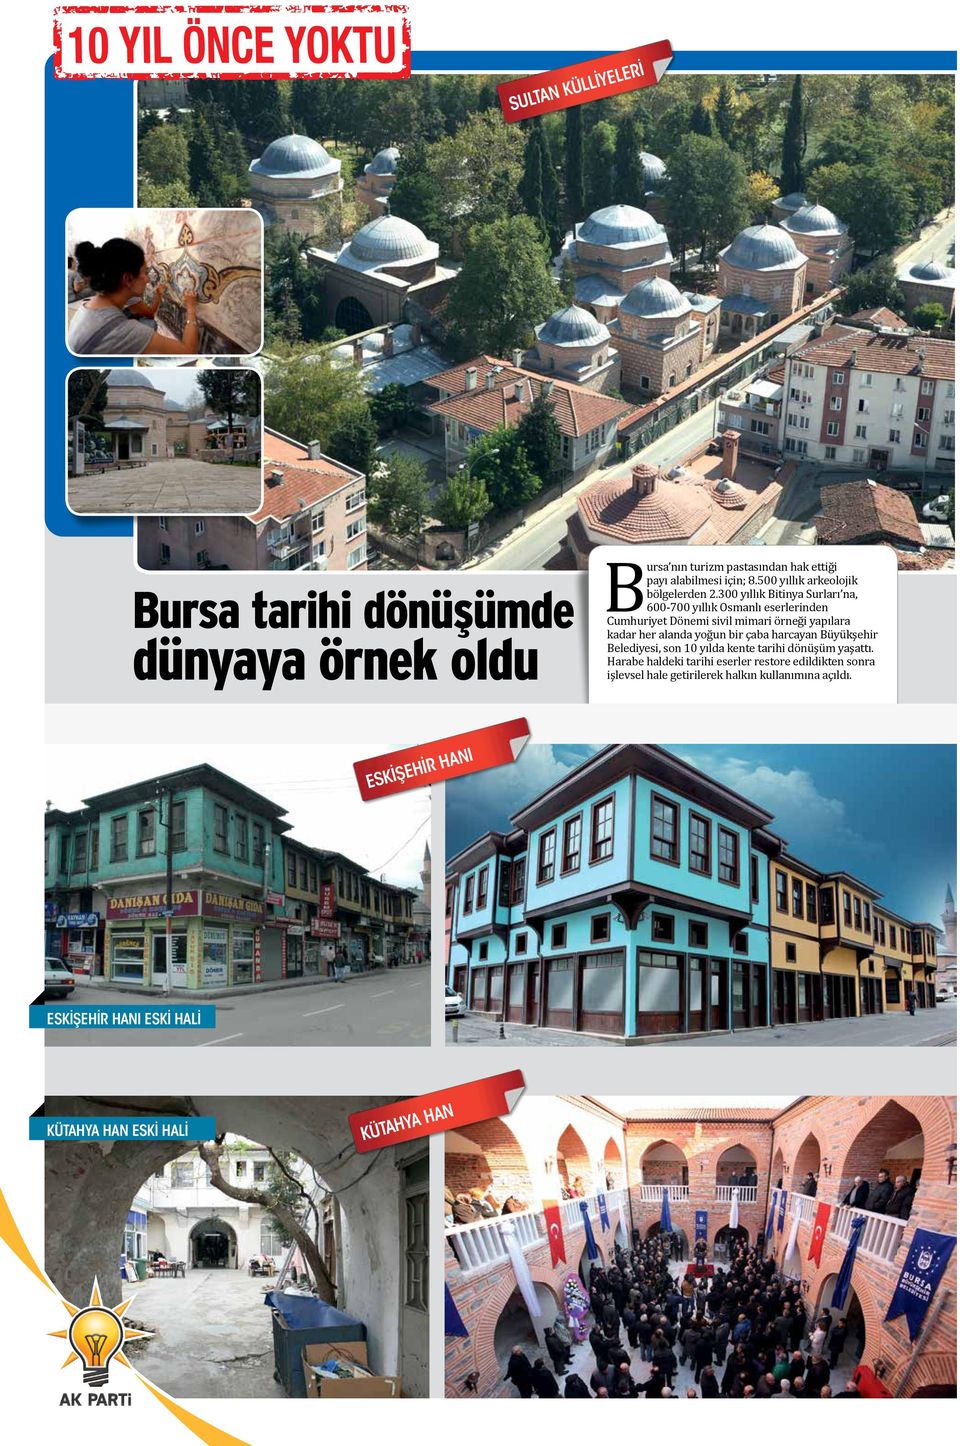 300 yıllık Bitinya Surları na, 600-700 yıllık Osmanlı eserlerinden Cumhuriyet Dönemi sivil mimari örneği yapılara kadar her alanda yoğun bir